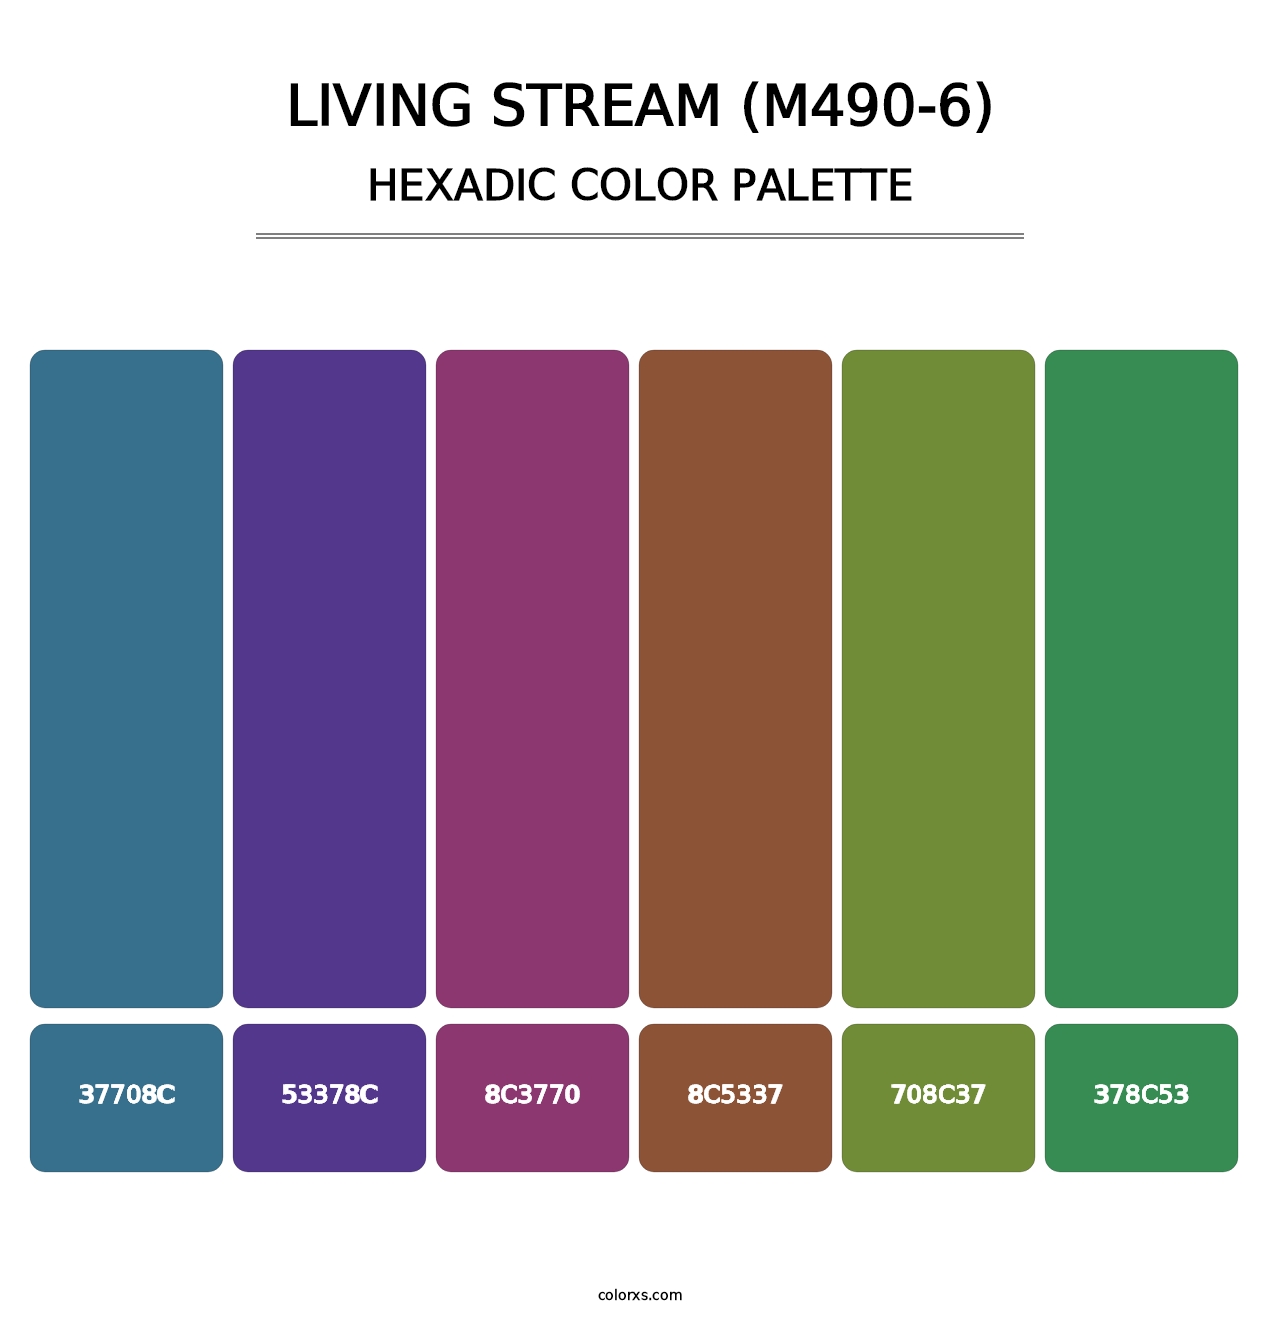 Living Stream (M490-6) - Hexadic Color Palette